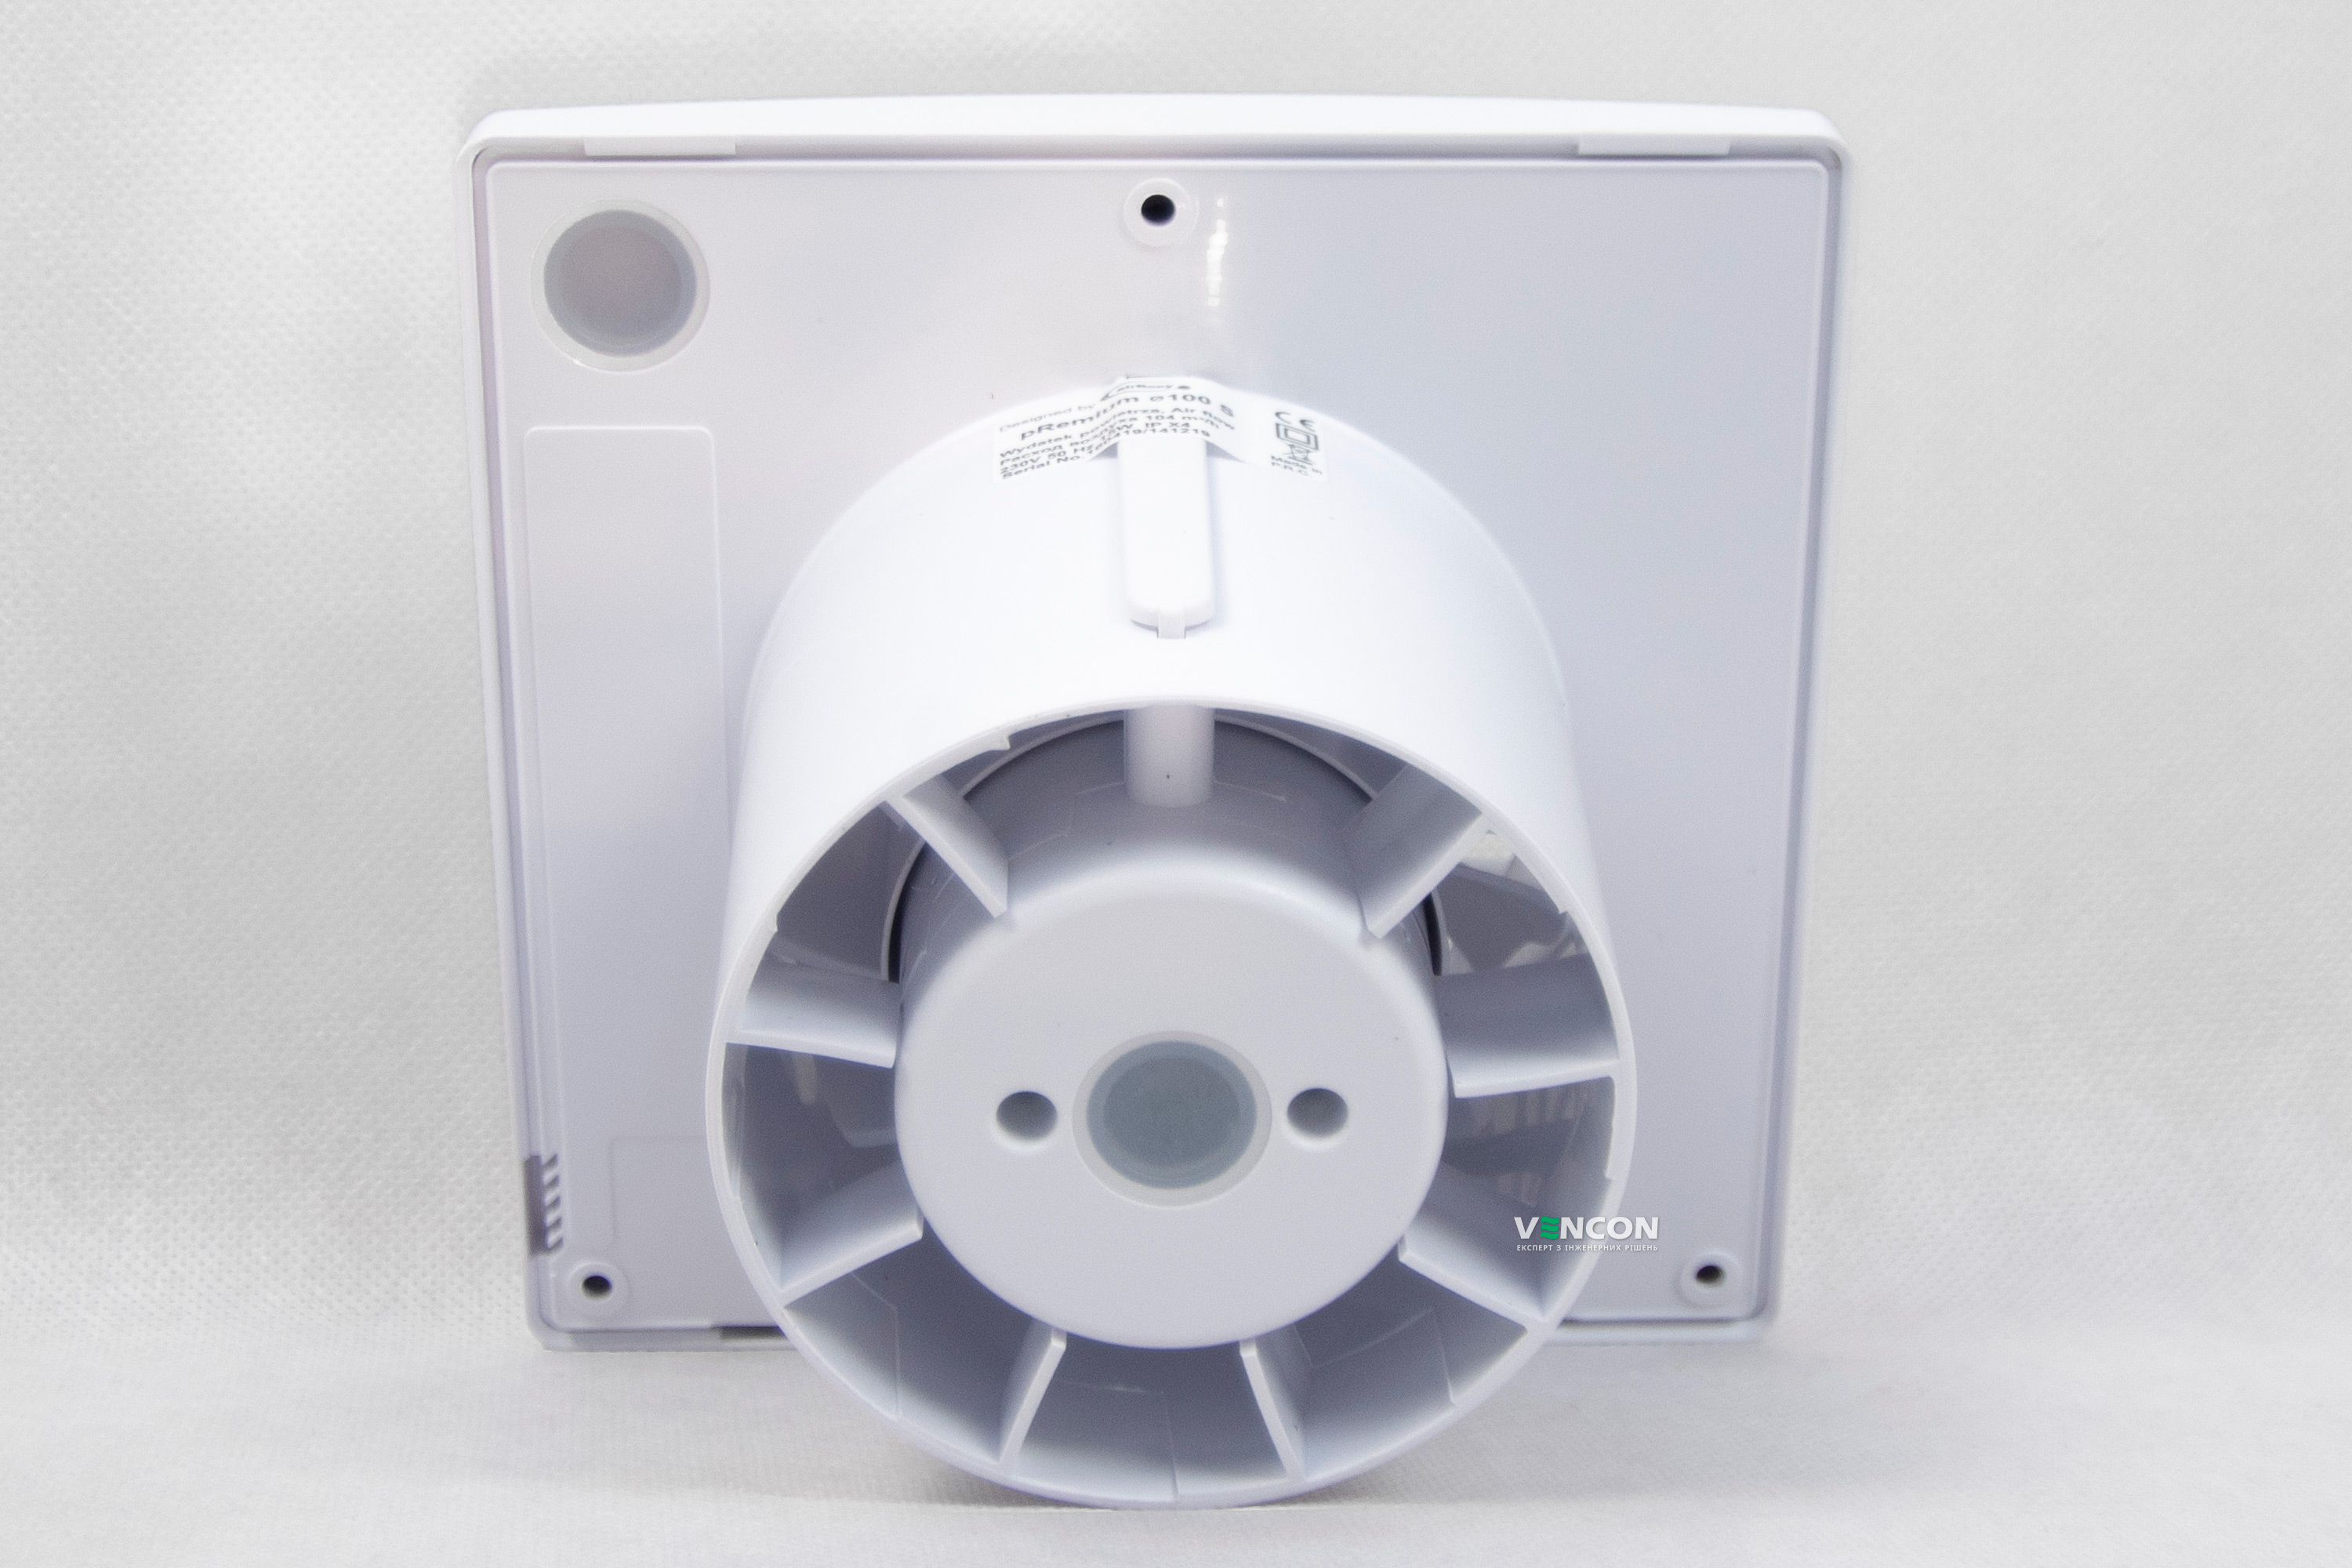 Вытяжной вентилятор AirRoxy pRemium 100 S (01-013) отзывы - изображения 5